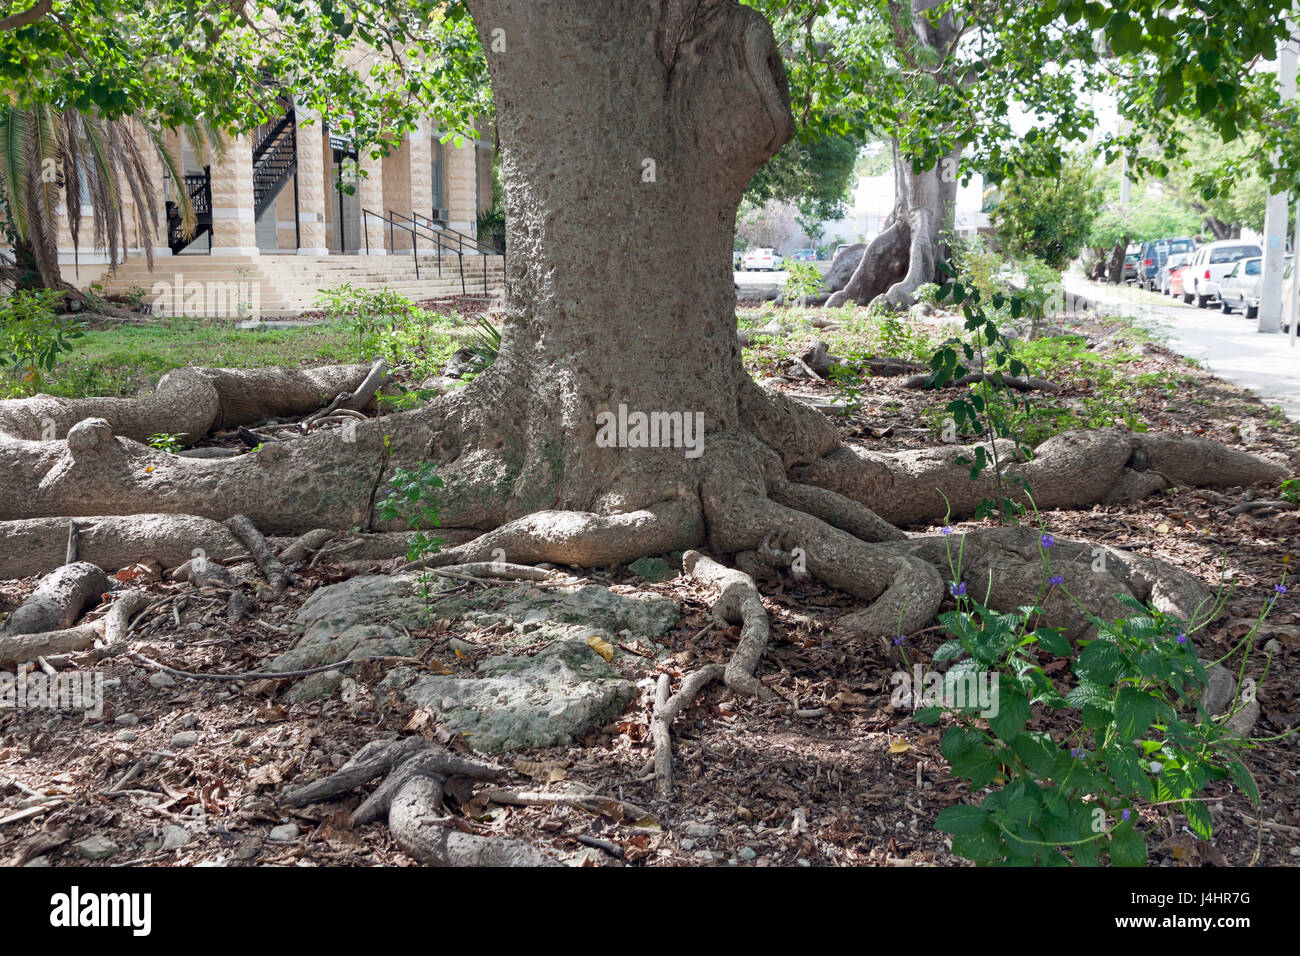 Kapokier (Ceiba pentandra), également connu sous le nom de coton ou soie coton java tree comme vu à Key West, en Floride. Banque D'Images